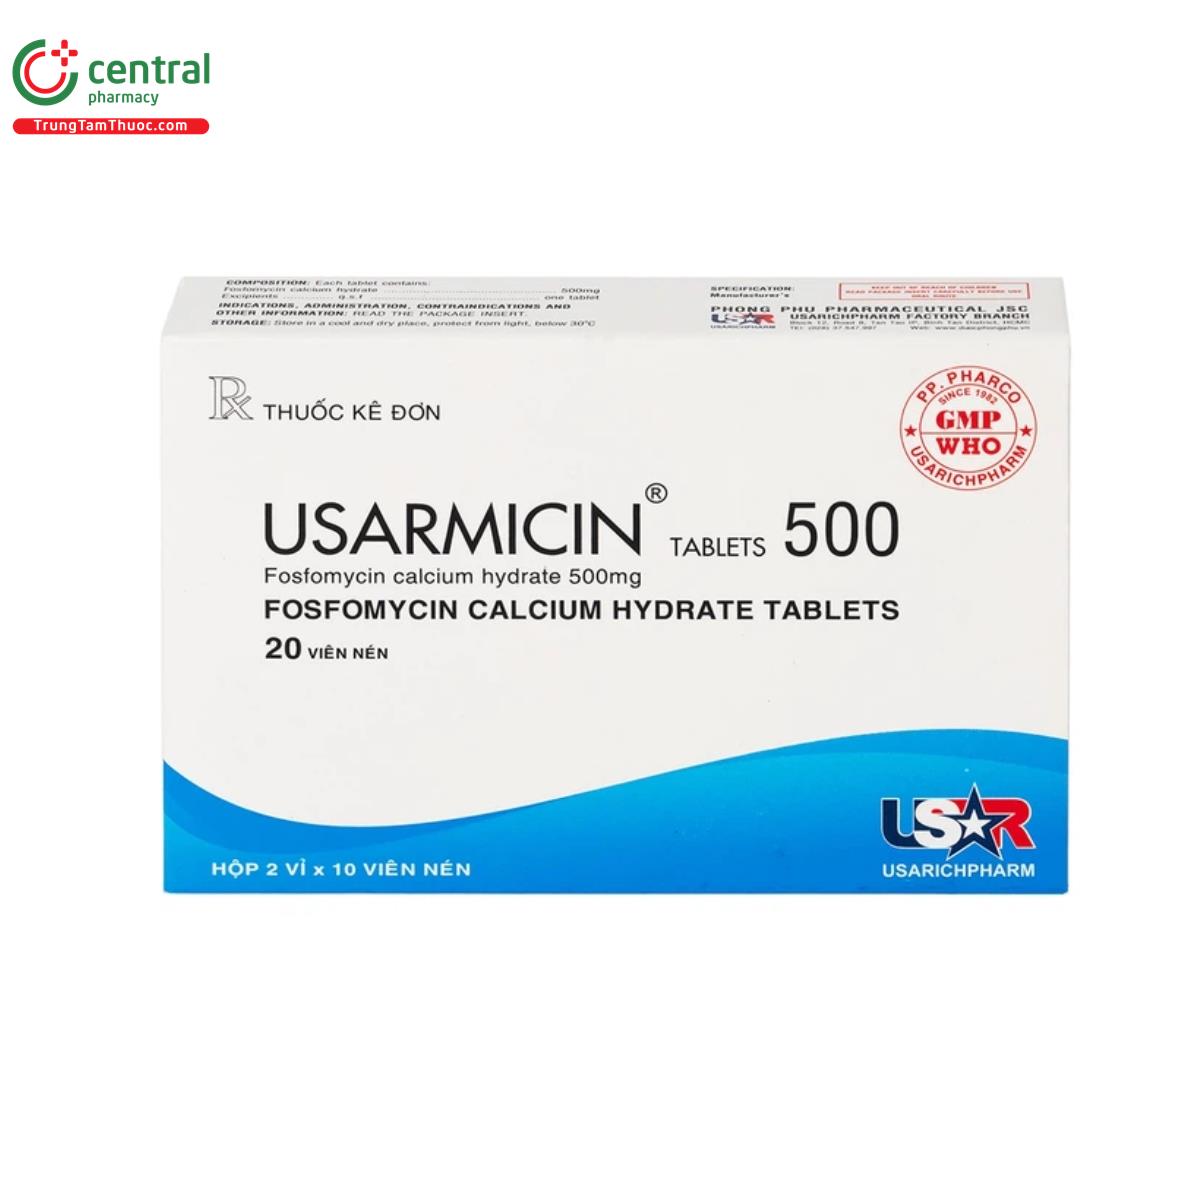 usarmicin tablets 500 5 S7461